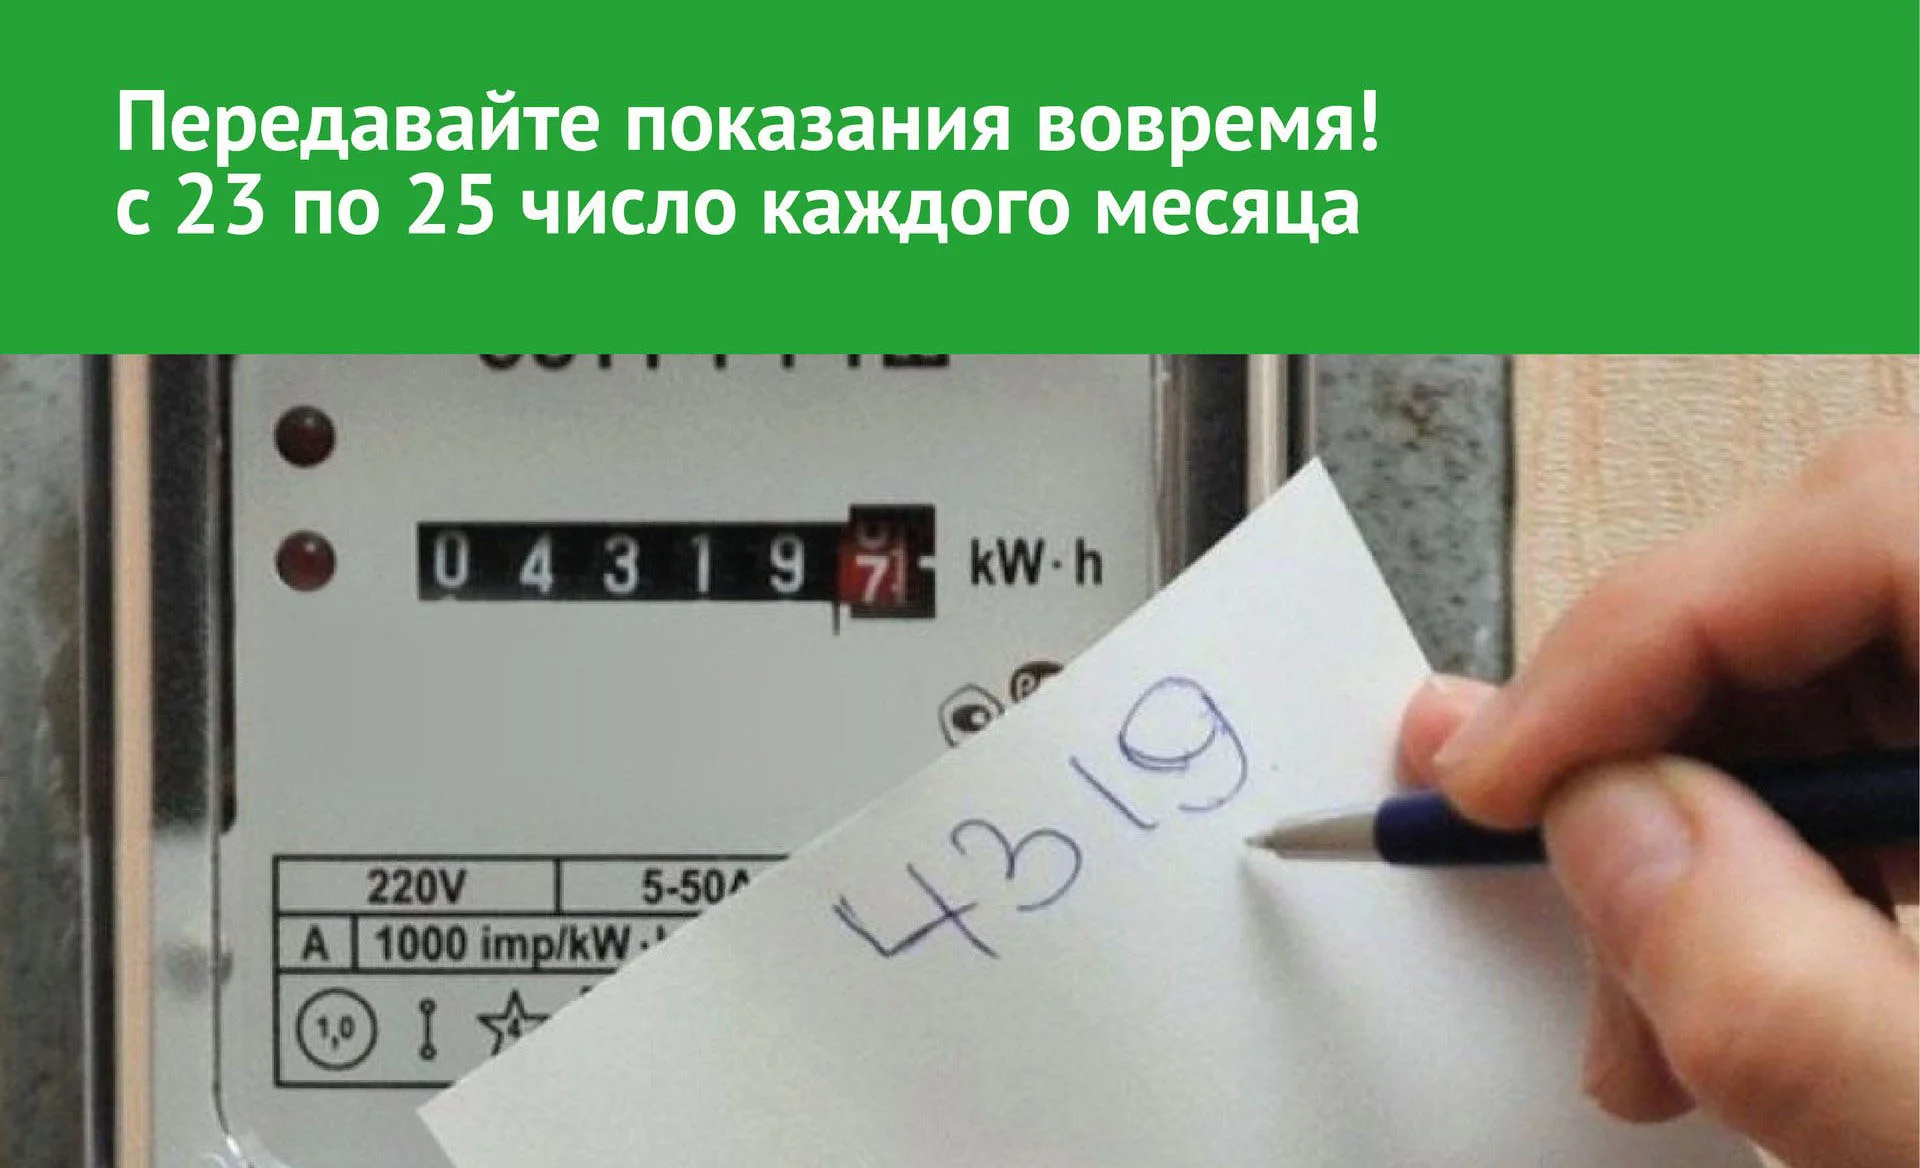 «ТНС энерго Ростов-на-Дону» напоминает о важности передачи показаний счетчиков до 25 числа